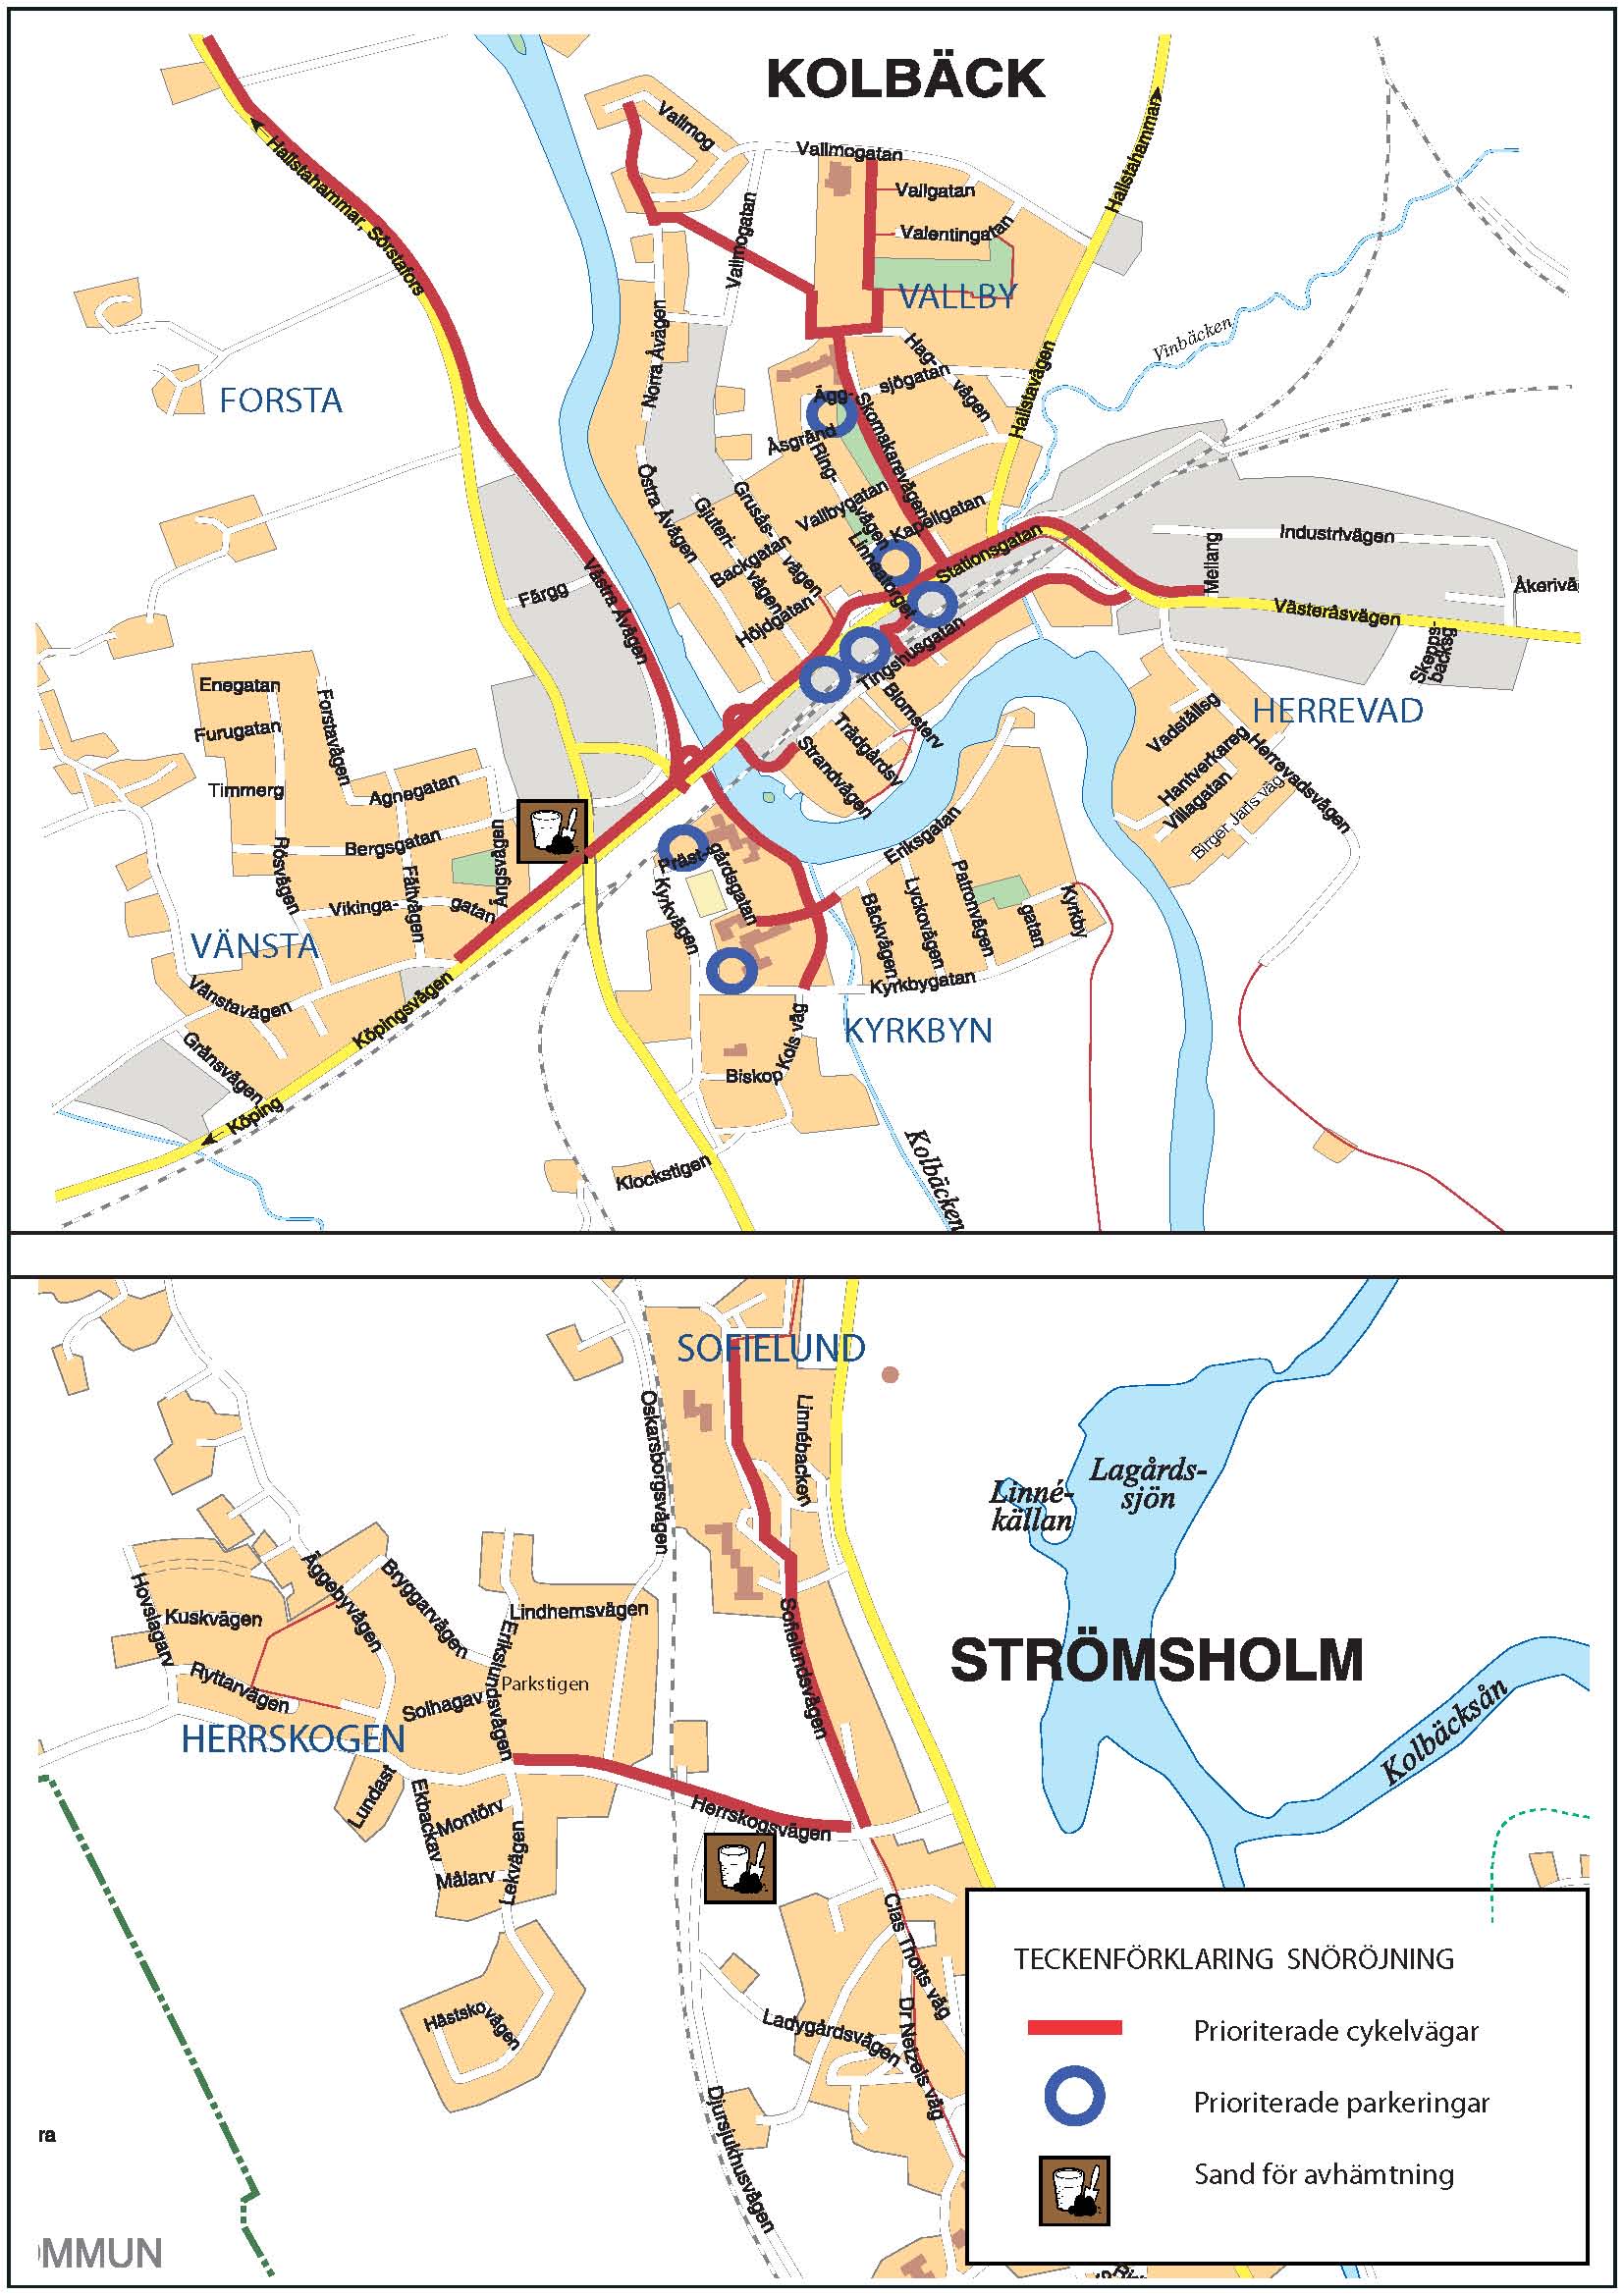 Prioriteringskarta för snöröjning i Kolbäck och Strömsholm